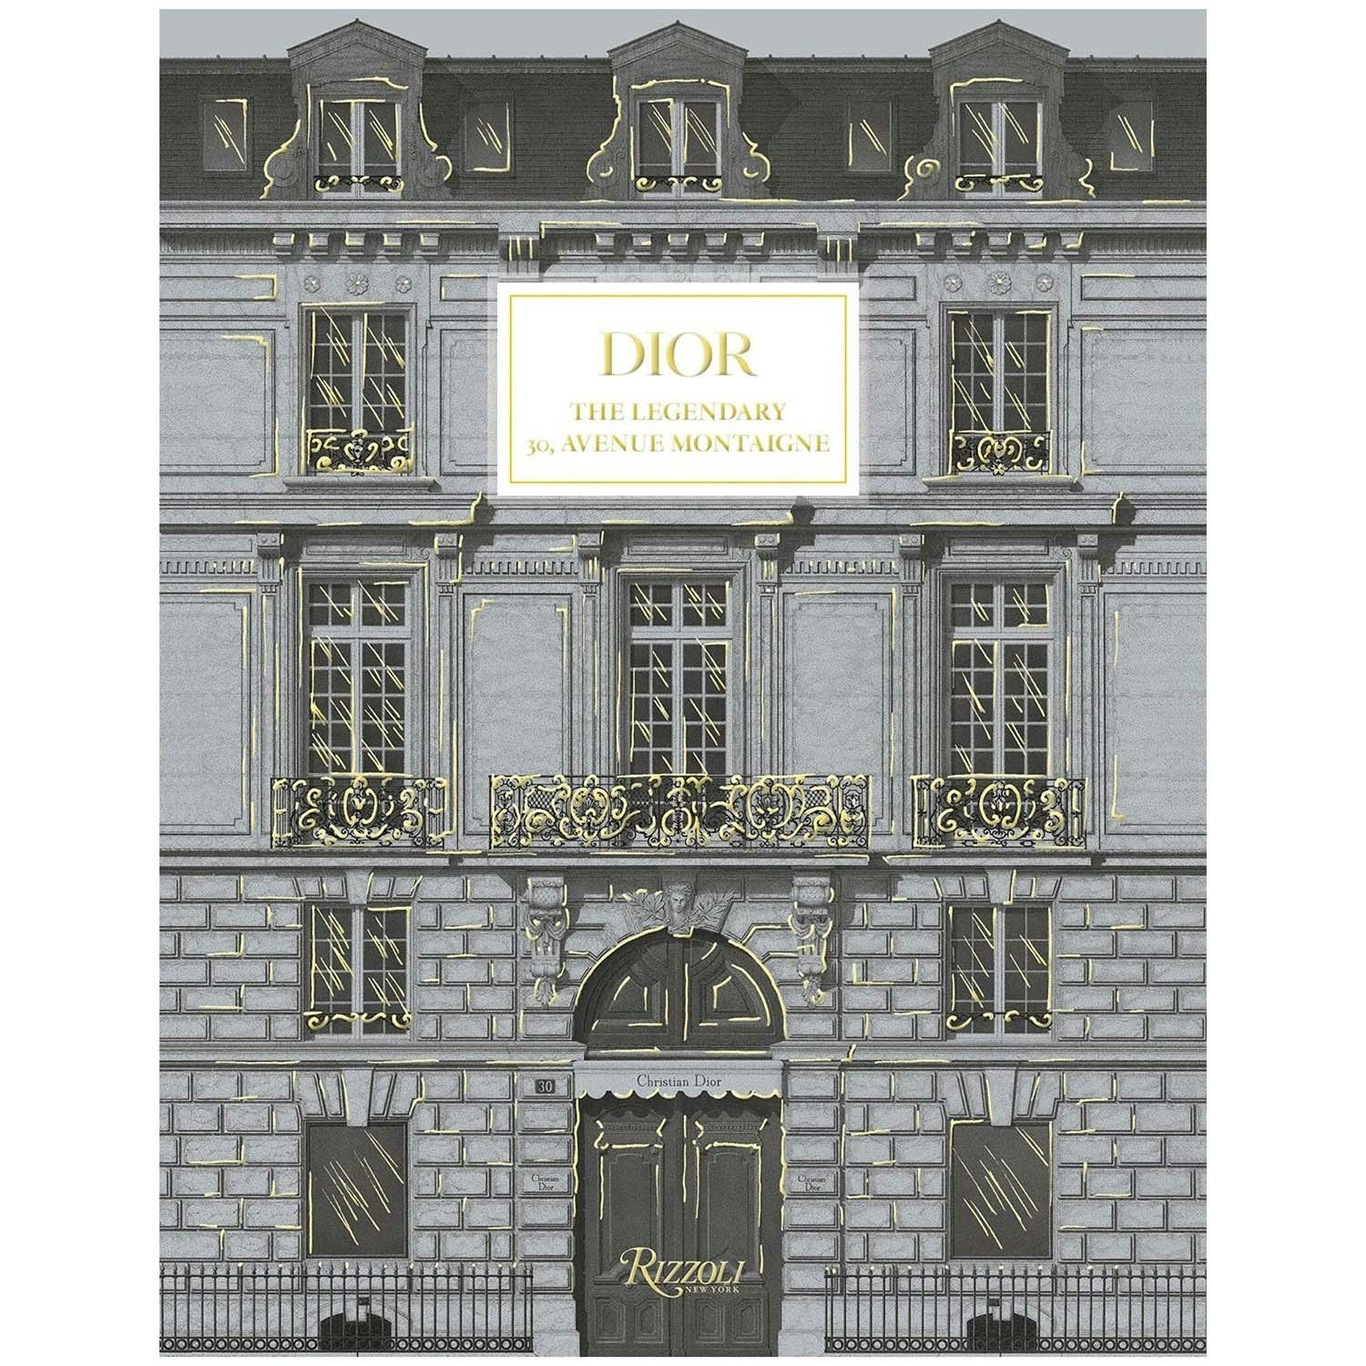 Dior: The Legendary 30, Avenue Montaigne Bog